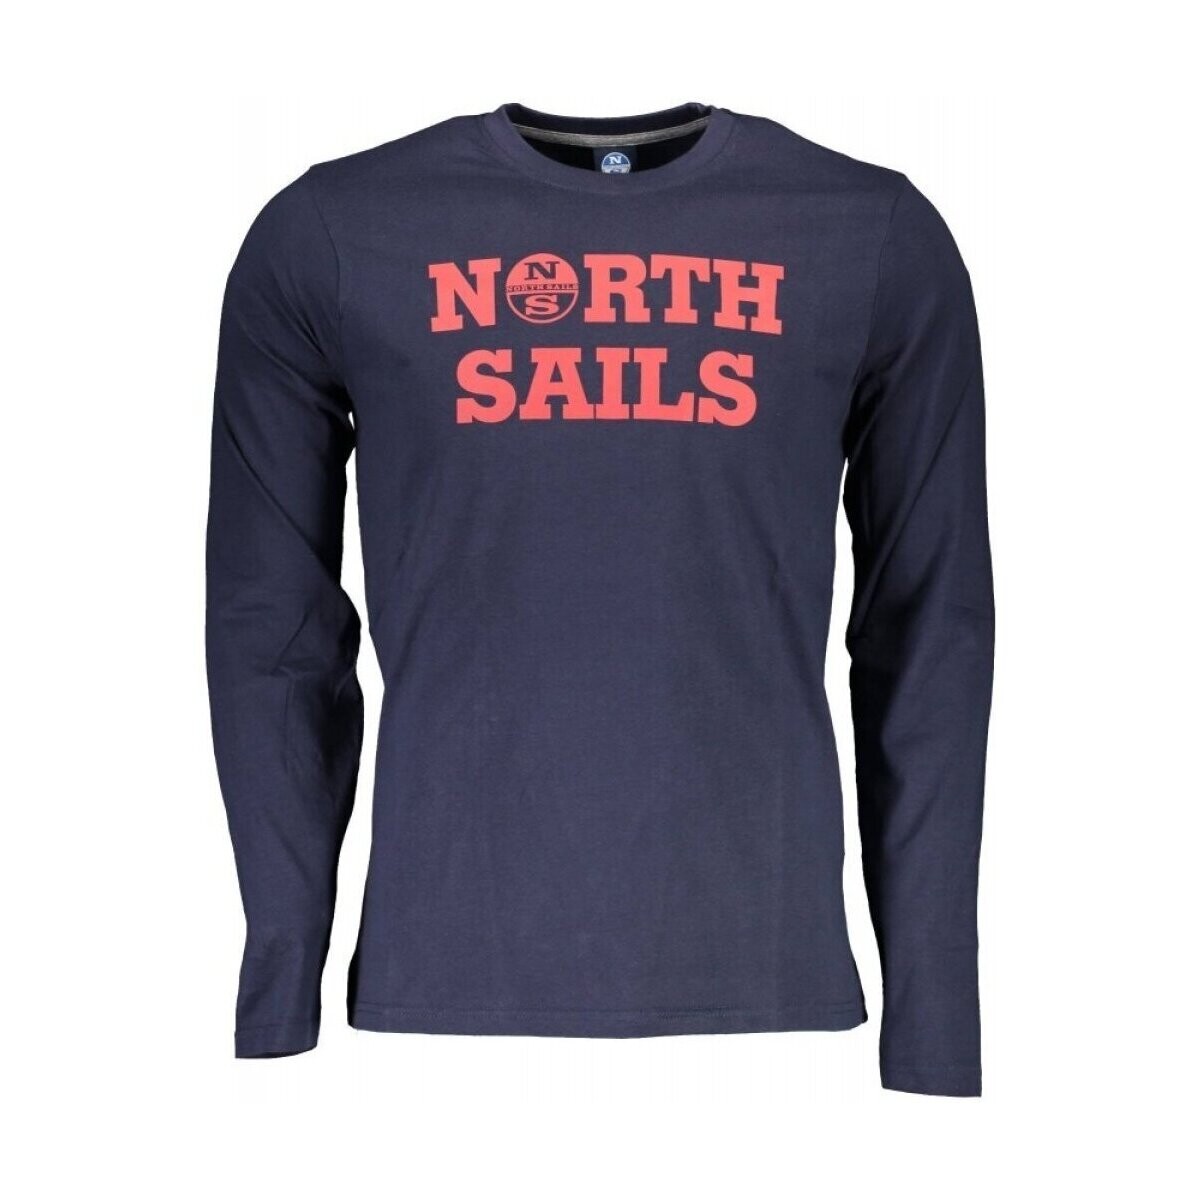 Υφασμάτινα Άνδρας T-shirt με κοντά μανίκια North Sails 902478-000 Μπλέ